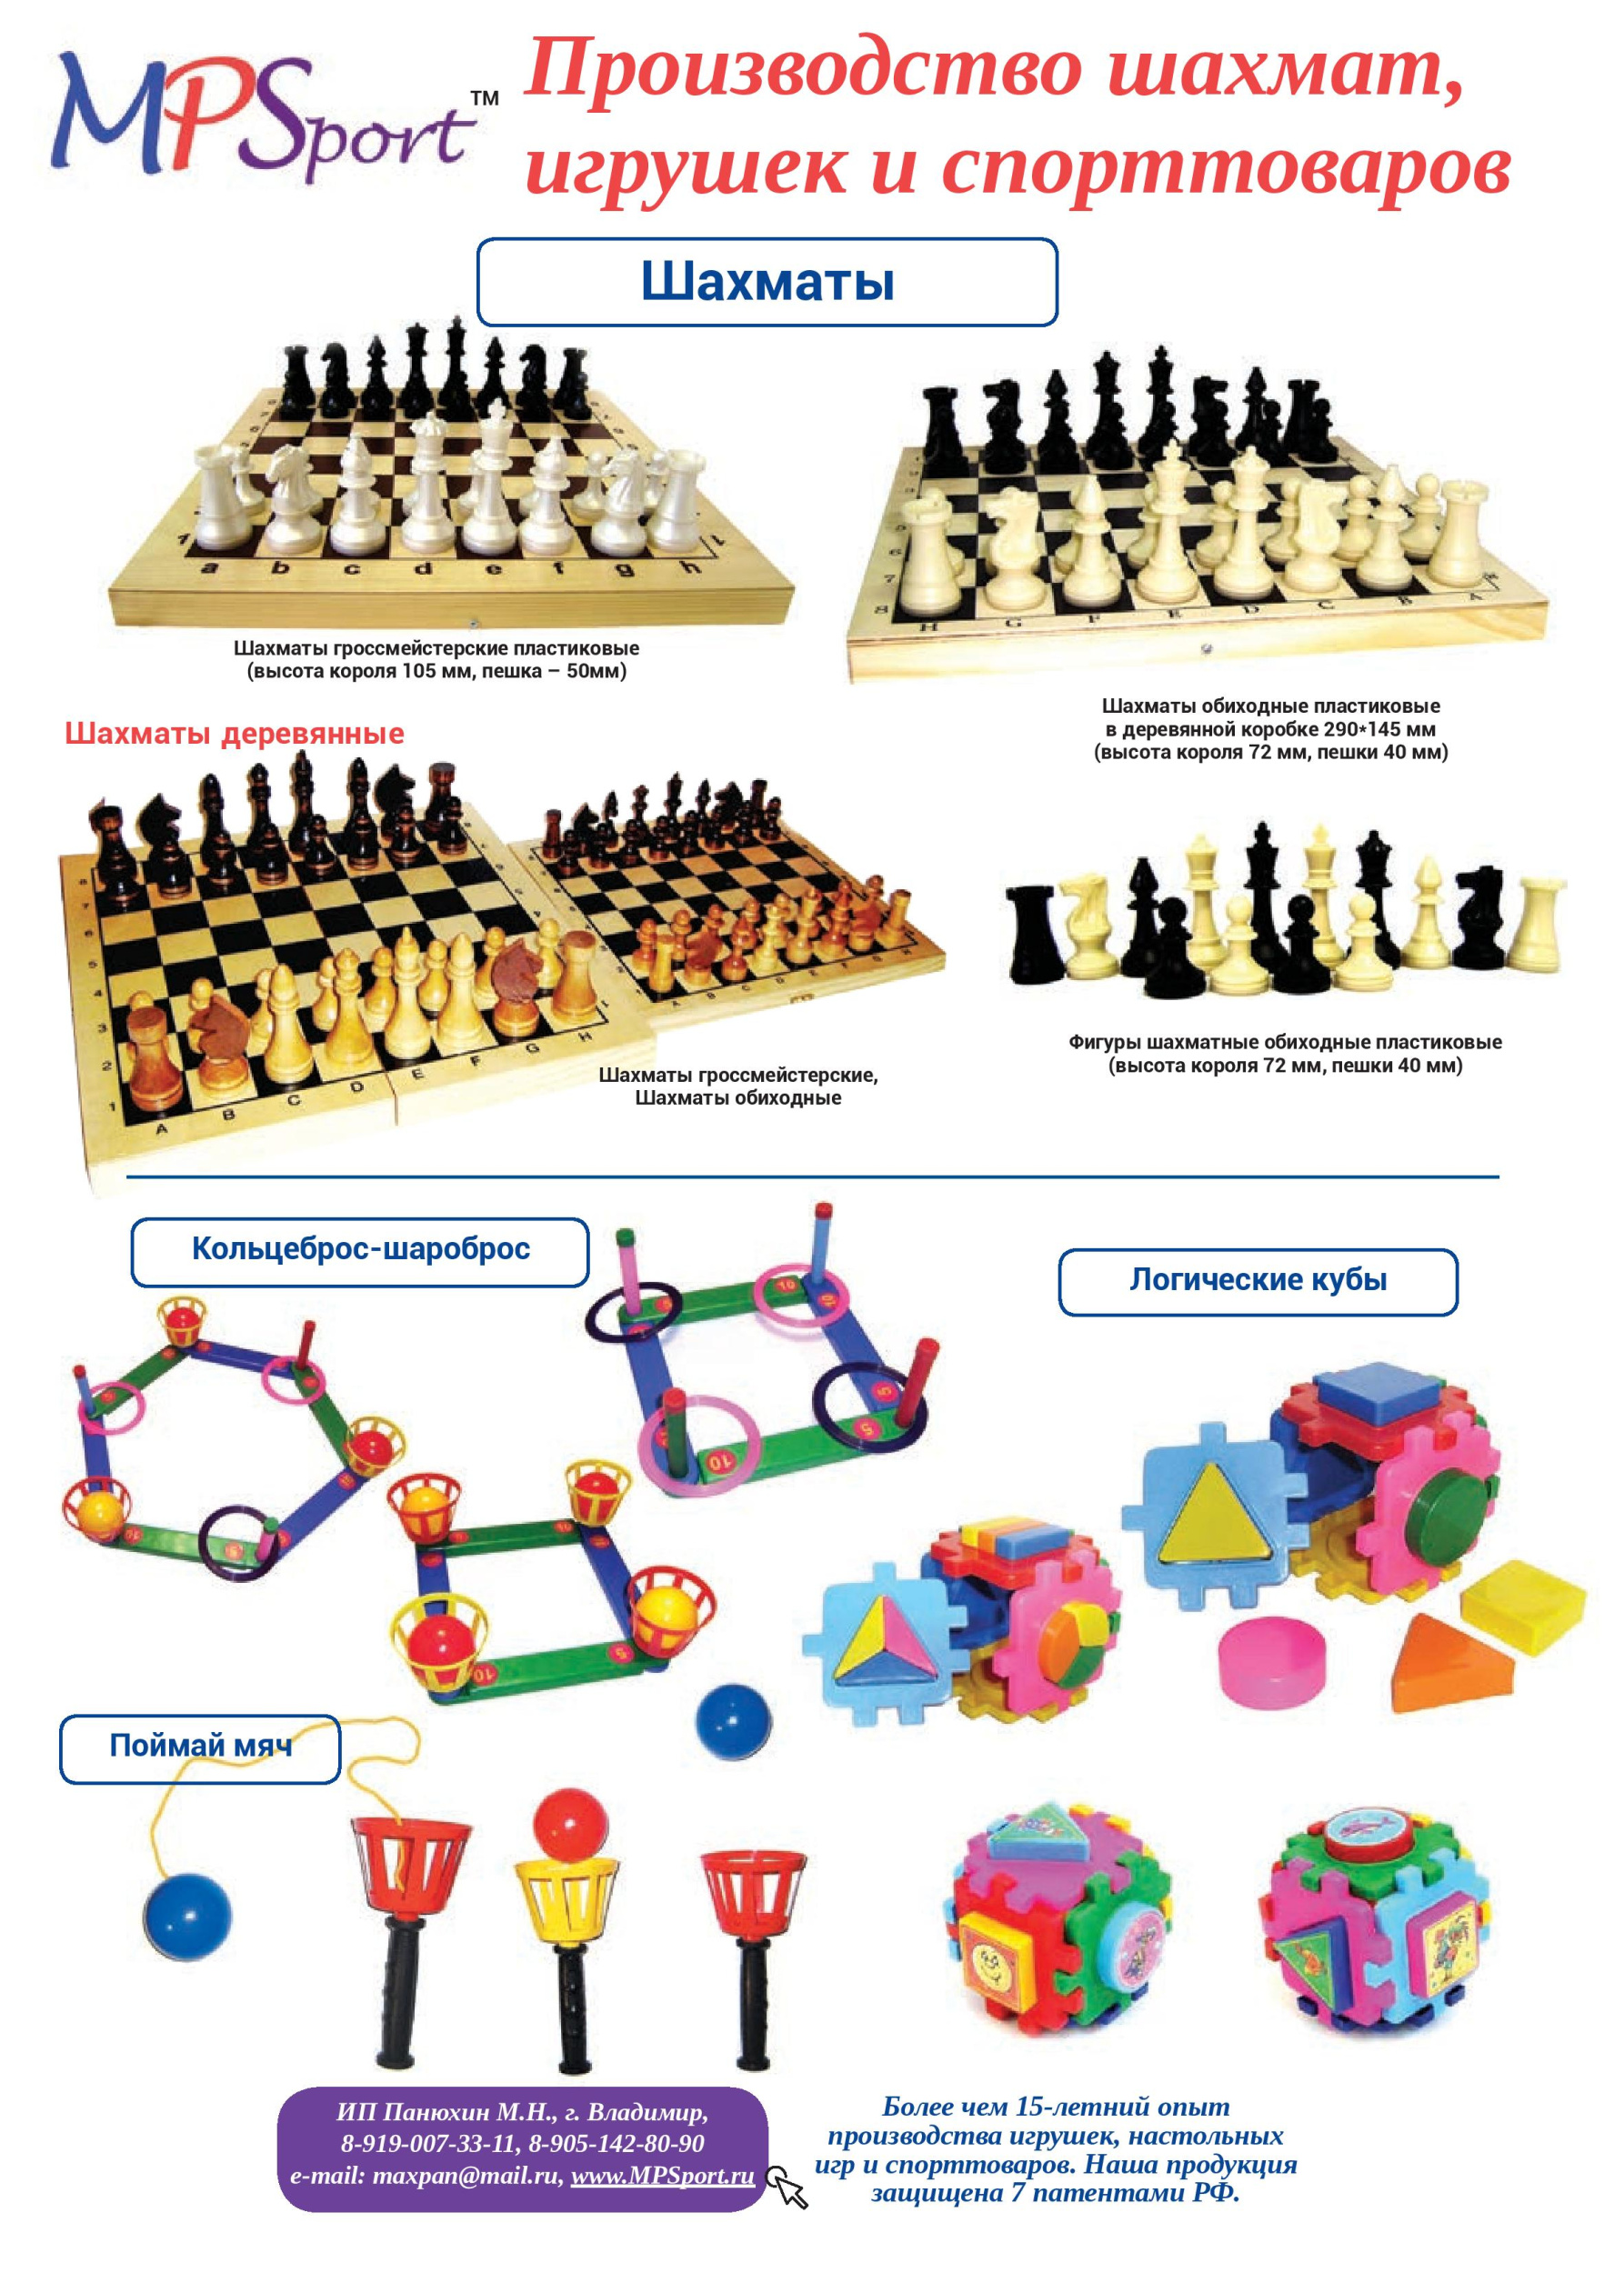 Производство шахмат, игрушек и спорттоваров